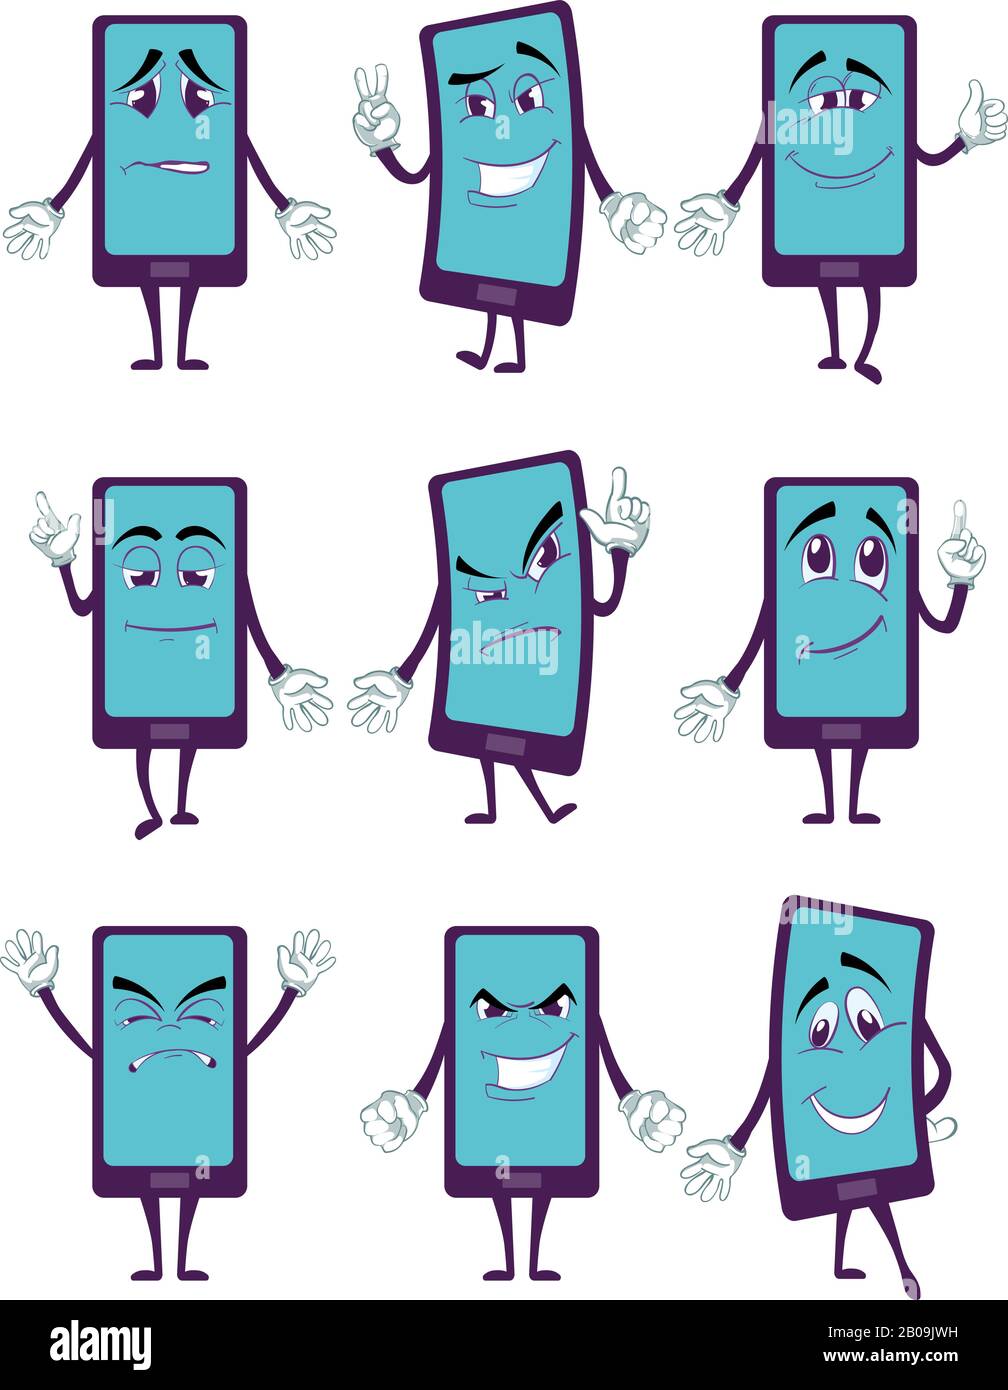 Fröhliche Smartphone-Zeichentrickfigur mit Beinen und Händen in verschiedenen Posen Vektorsatz. Handy mit Happy Face, Handy zur Veranschaulichung der Kommunikation Stock Vektor